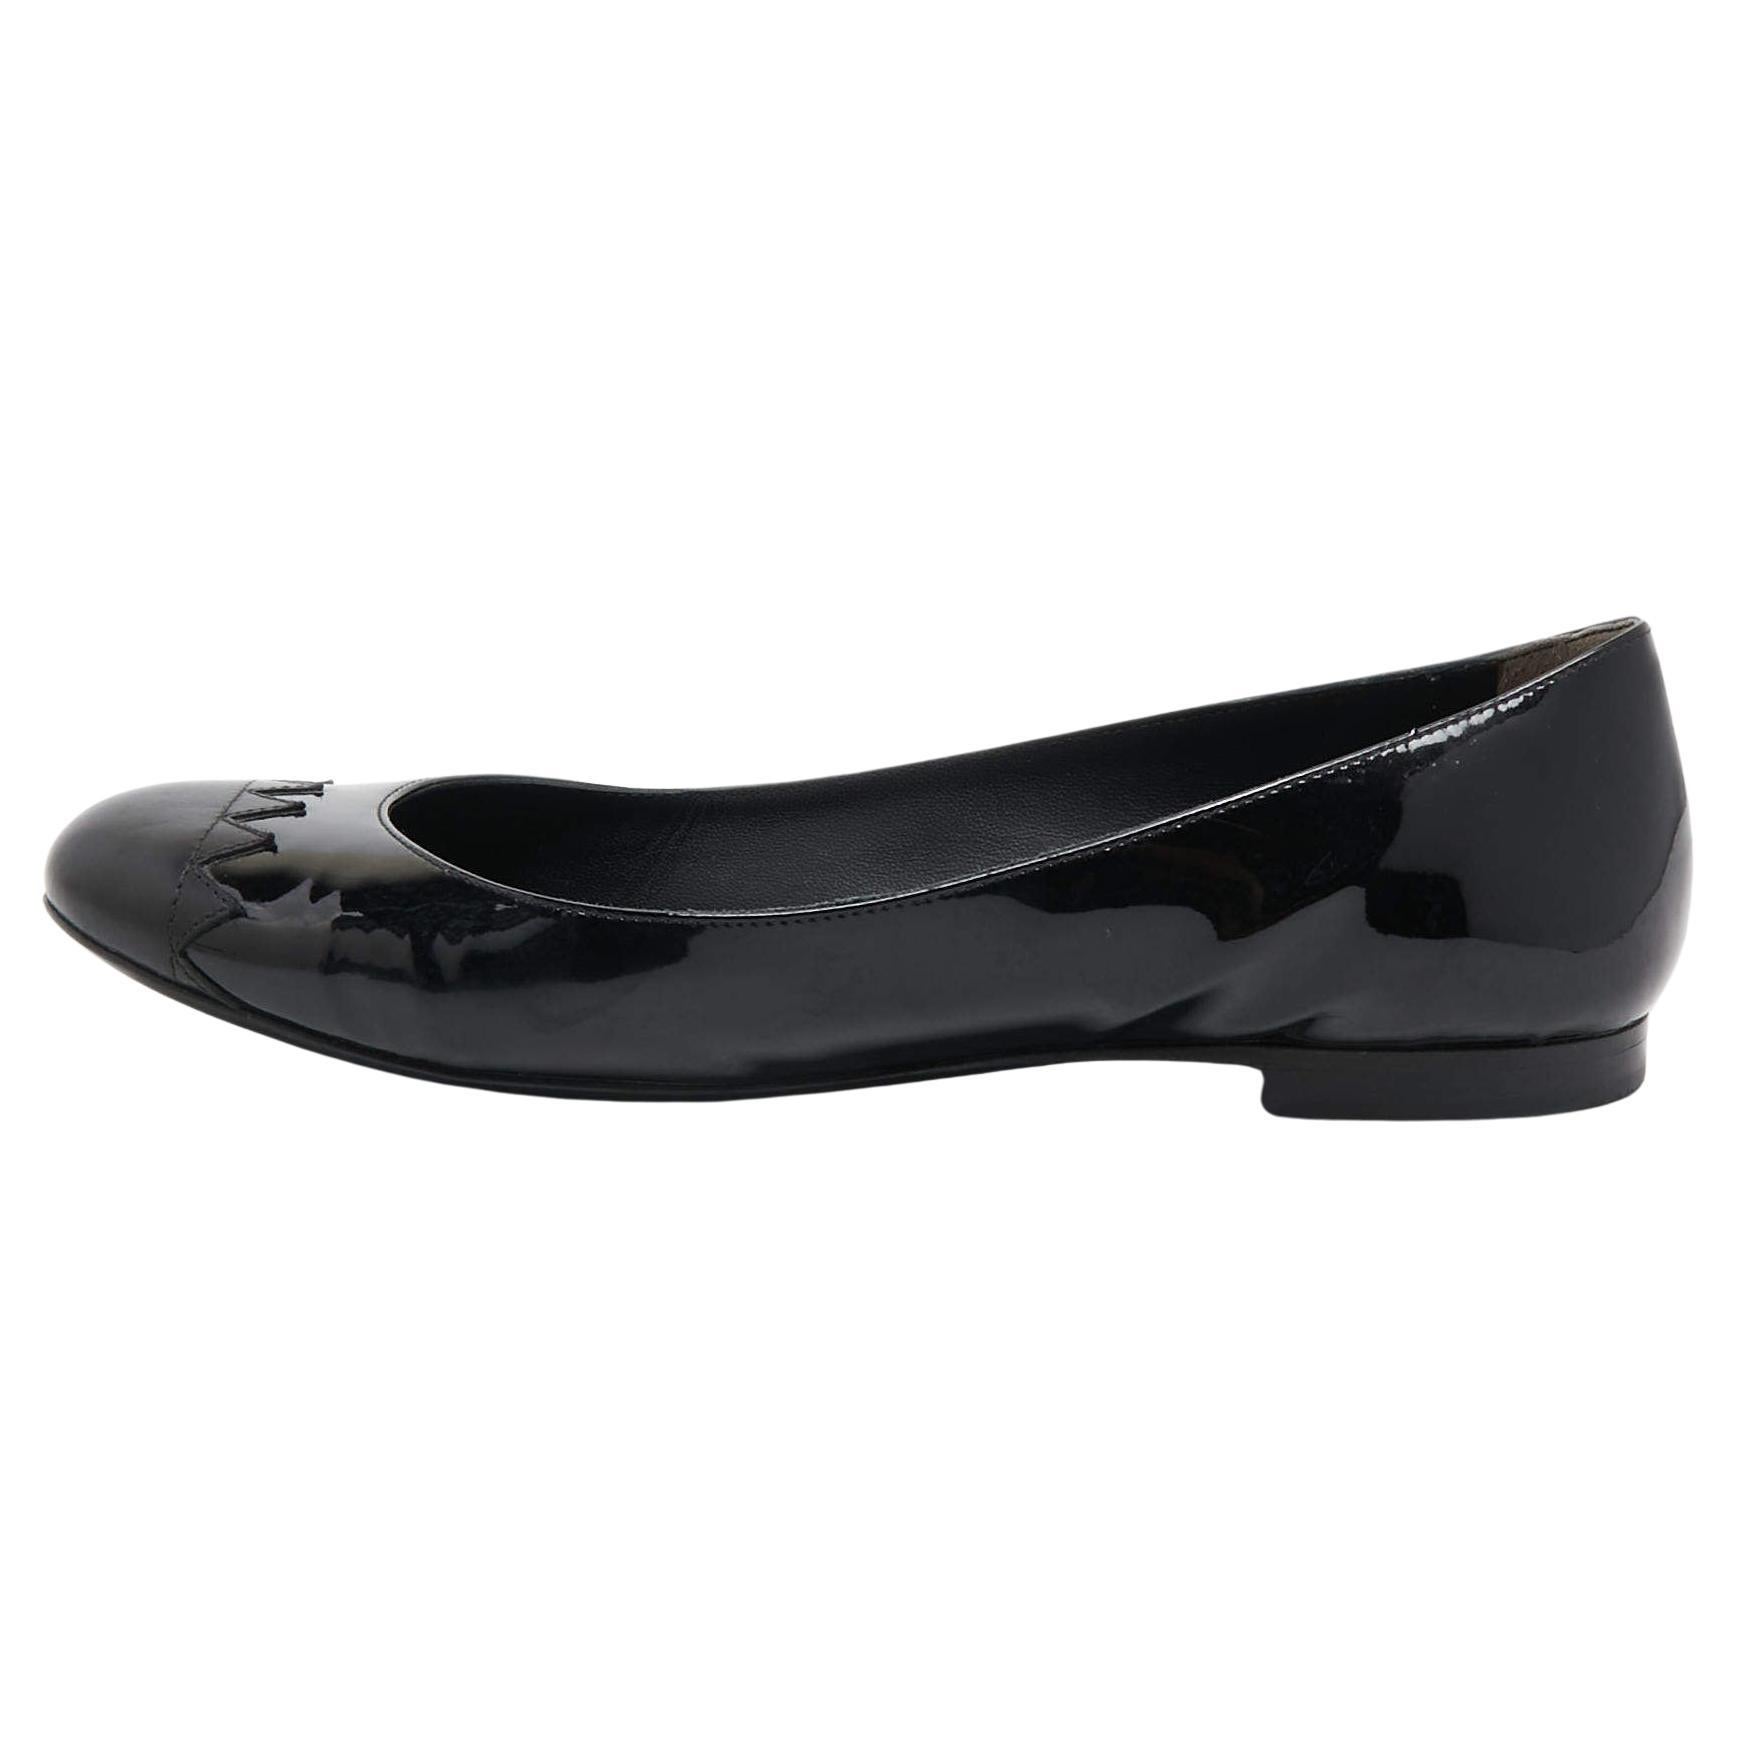 Fendi Black Patent Leather Cap Toe Ballet Flats Size 37.5 For Sale